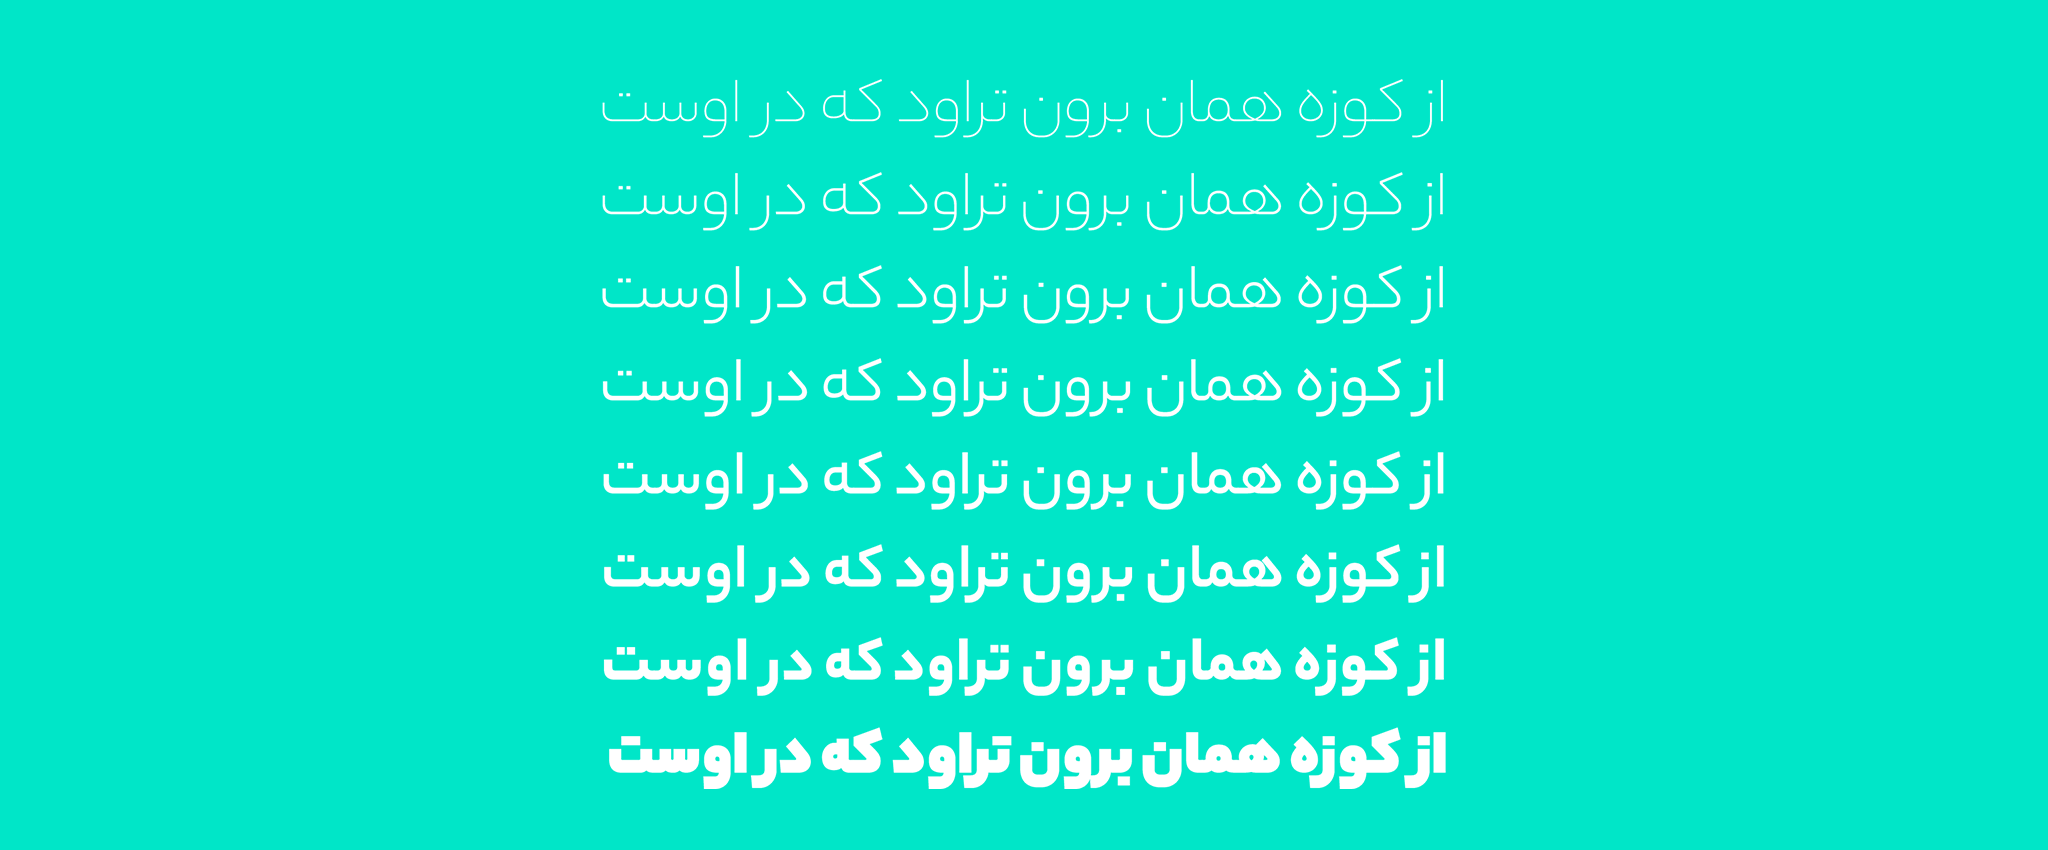 معرفی فونت فارسی یکان بخ از رضا بختیاری فرد (نسخه جدید)